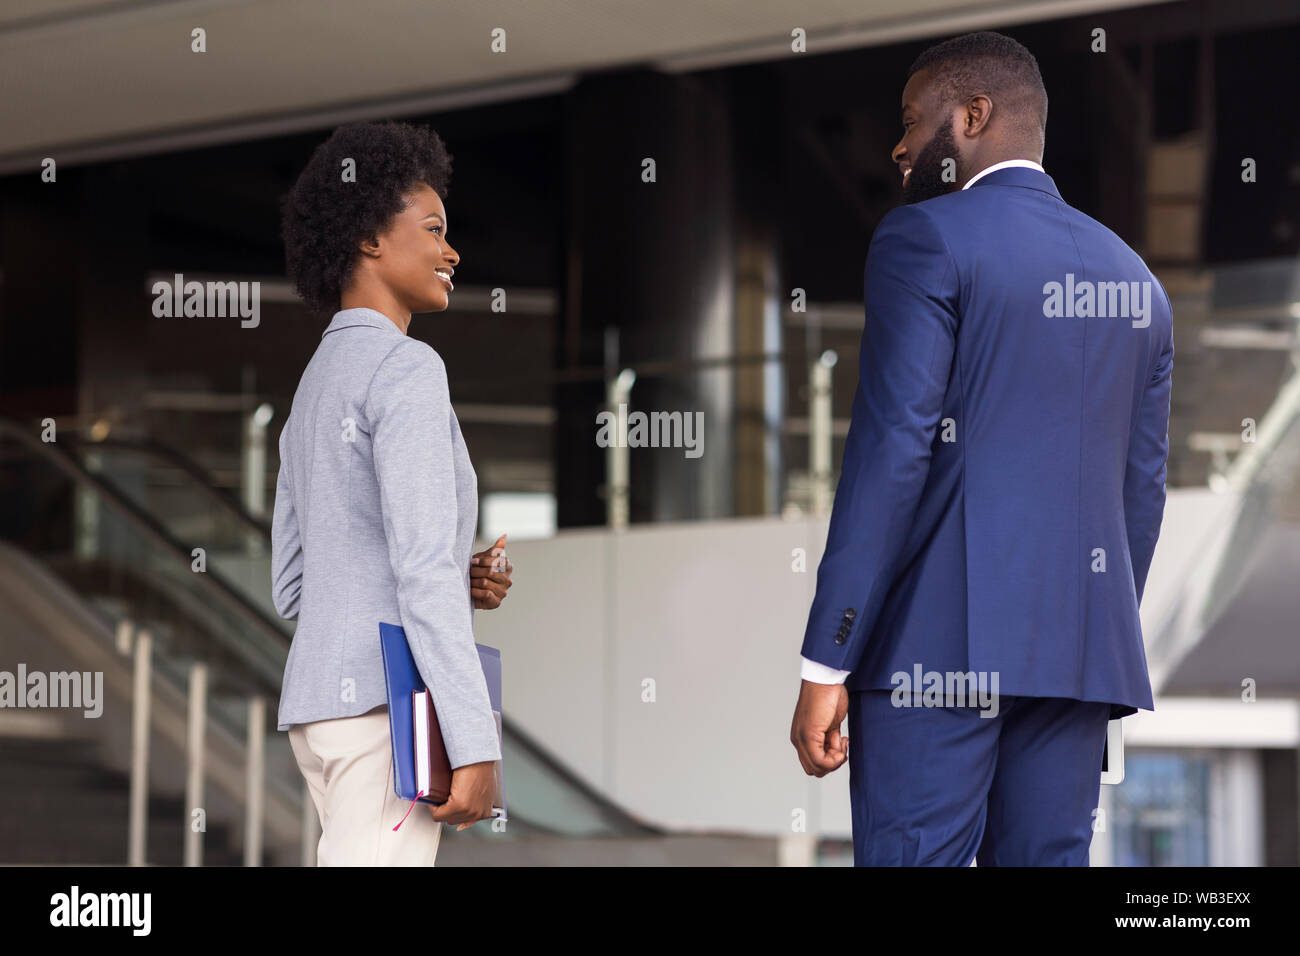 Compañeros africanos atractivo tener agradable charla juntos Foto de stock